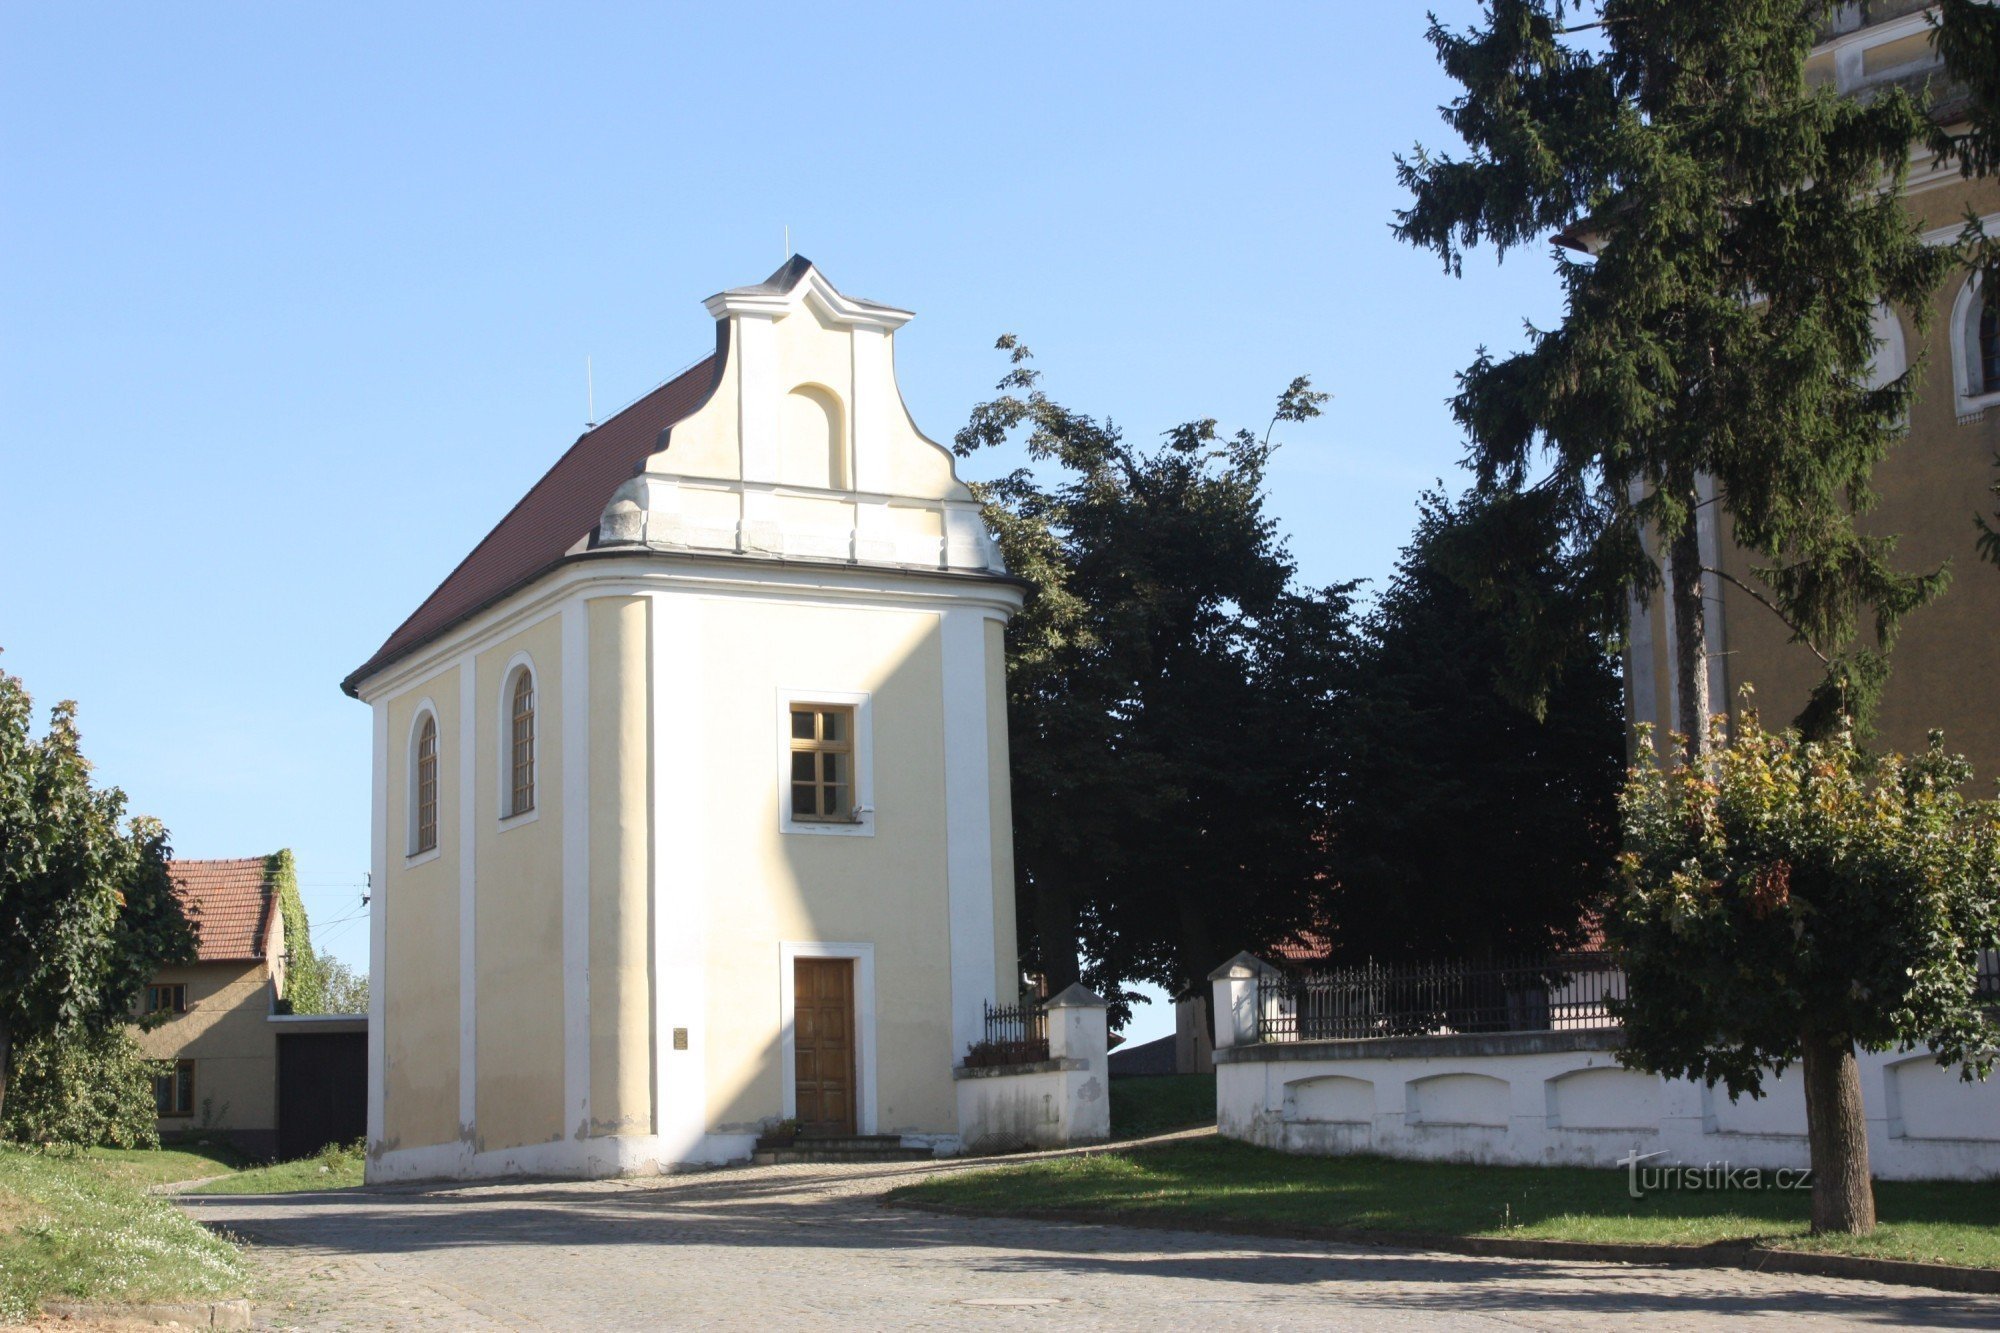 Municipal gathering place in Tištín